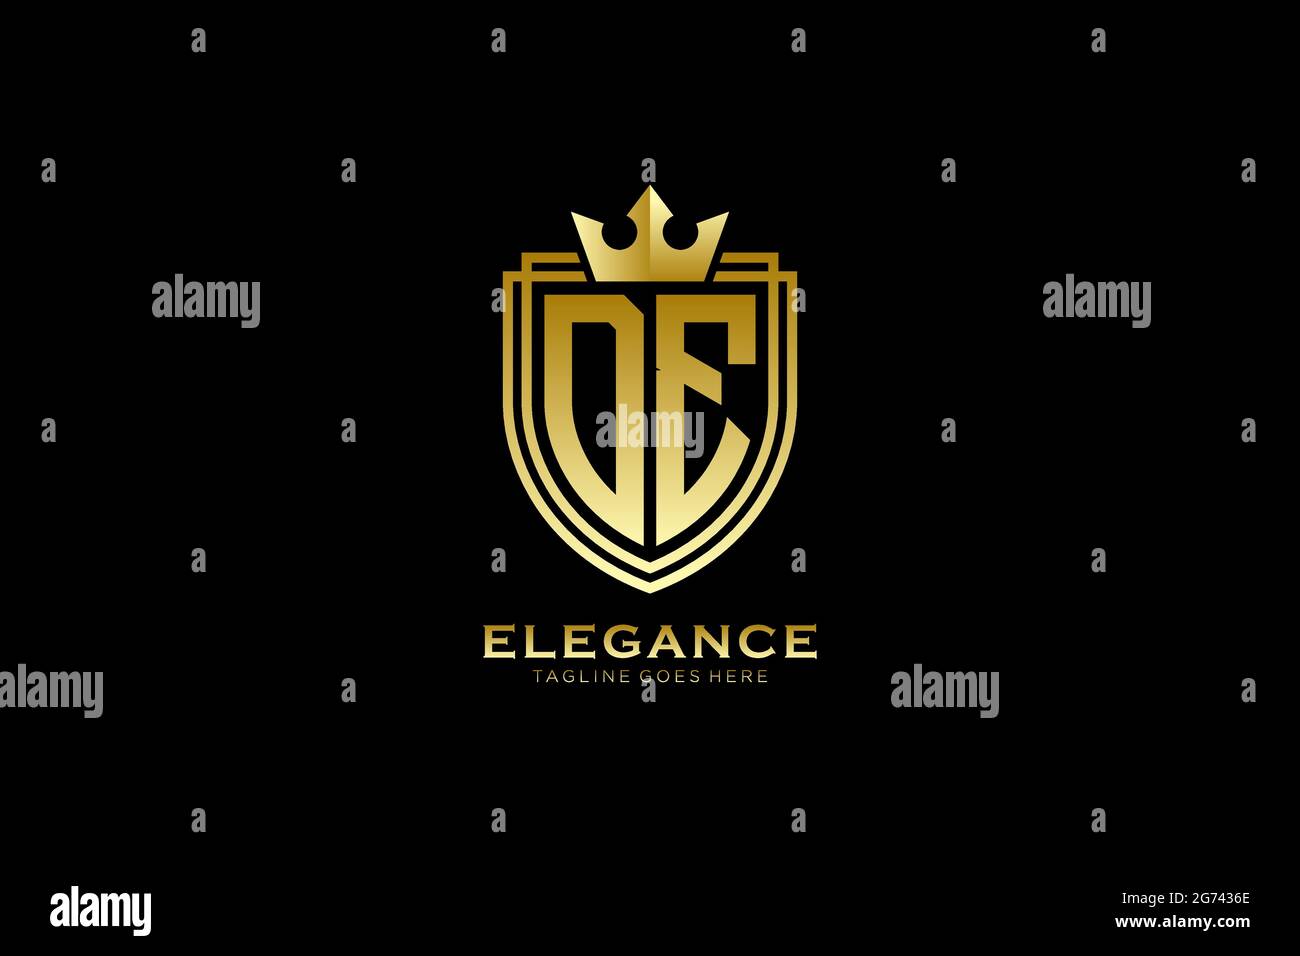 DE Elegantes Luxus-Monogramm-Logo oder Badge-Vorlage mit Rollen und königlicher Krone - perfekt für luxuriöse Branding-Projekte Stock Vektor